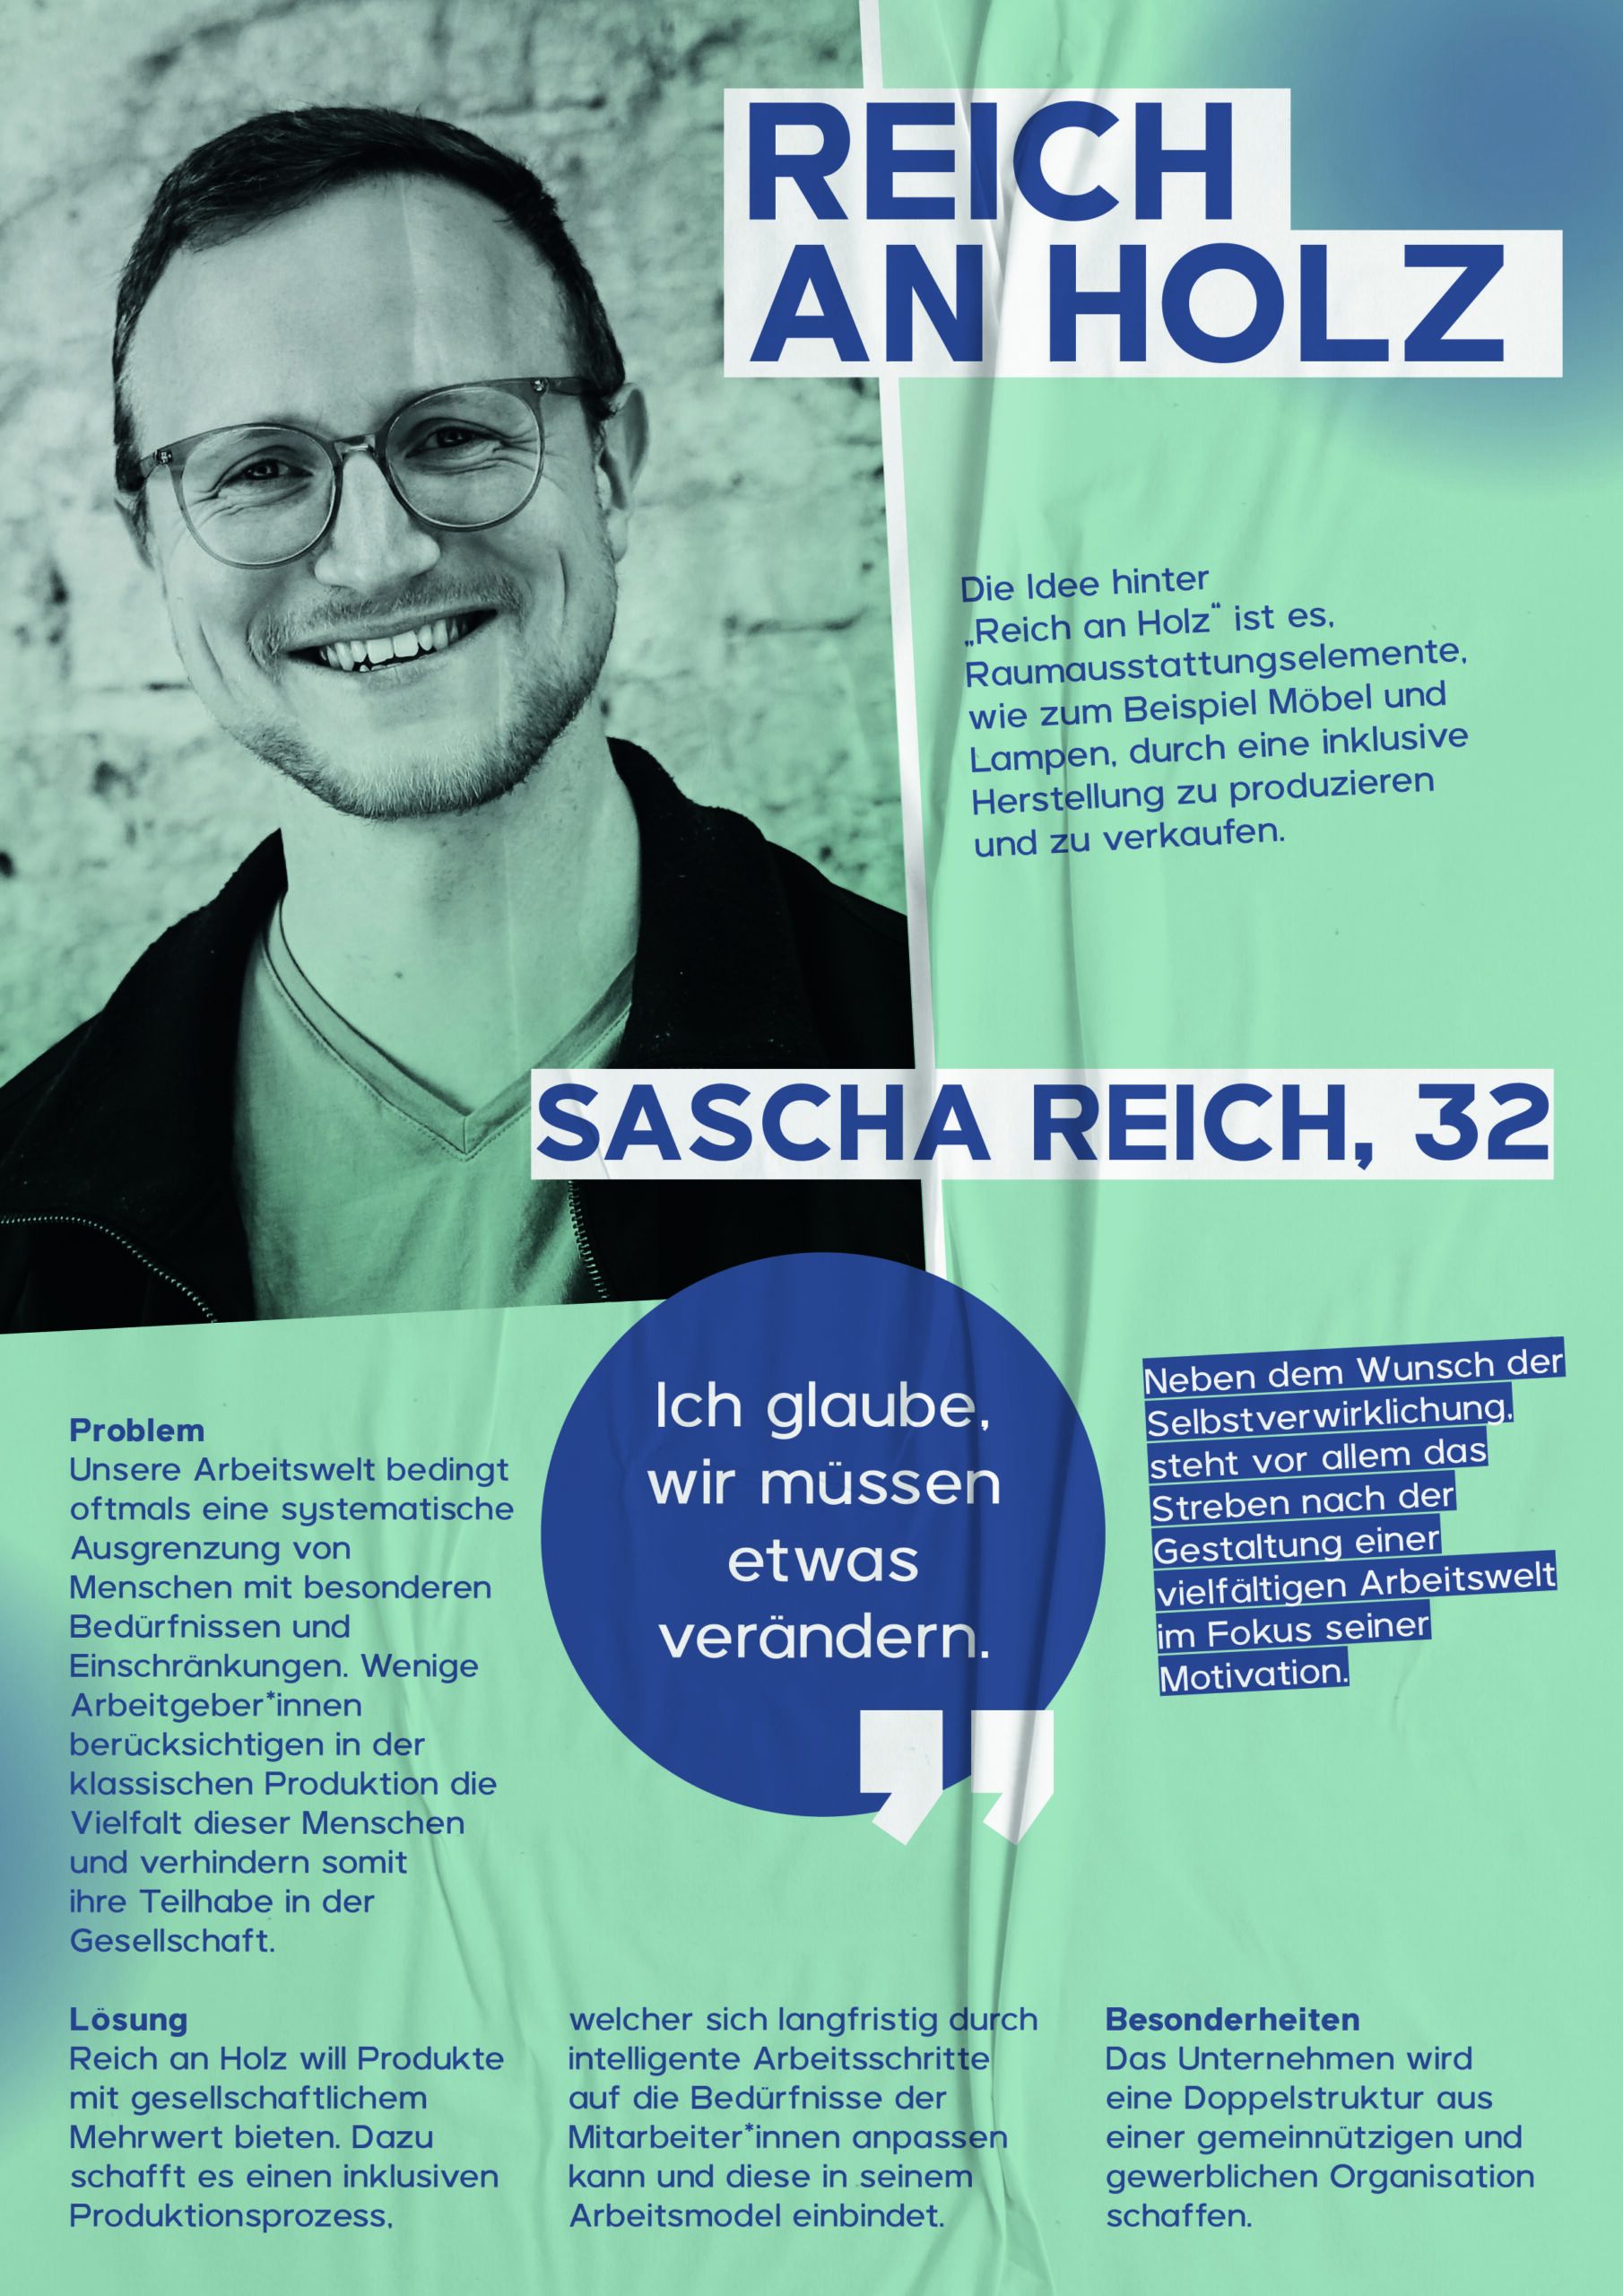 Sascha Reich, 32, will mit seiner Idee Reich an Holz Raumausstattungselemente durch eine inklusive Herstellung produzieren und verkaufen.